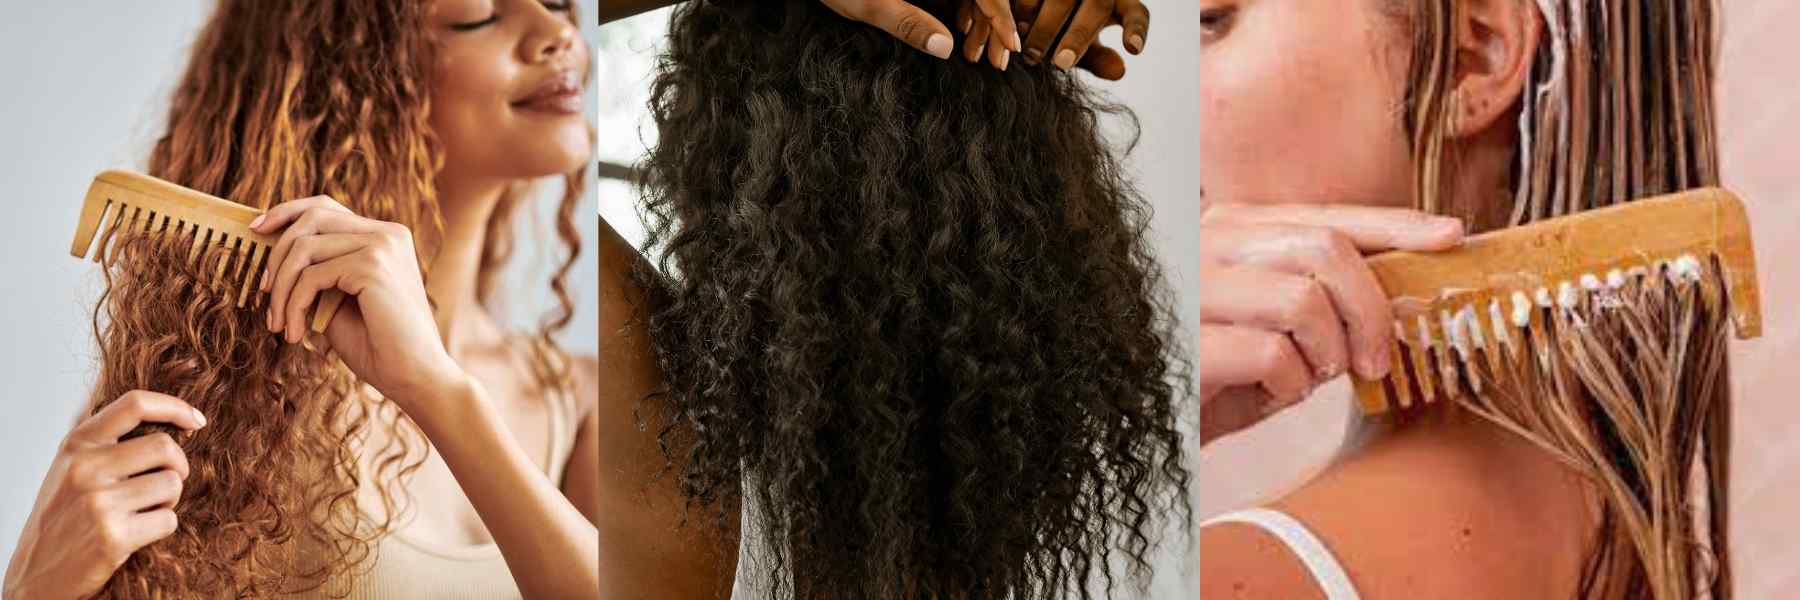 Richtiges Kämmen | 9 Tipps gegen krauses Haar, die funktionieren | INDISHA